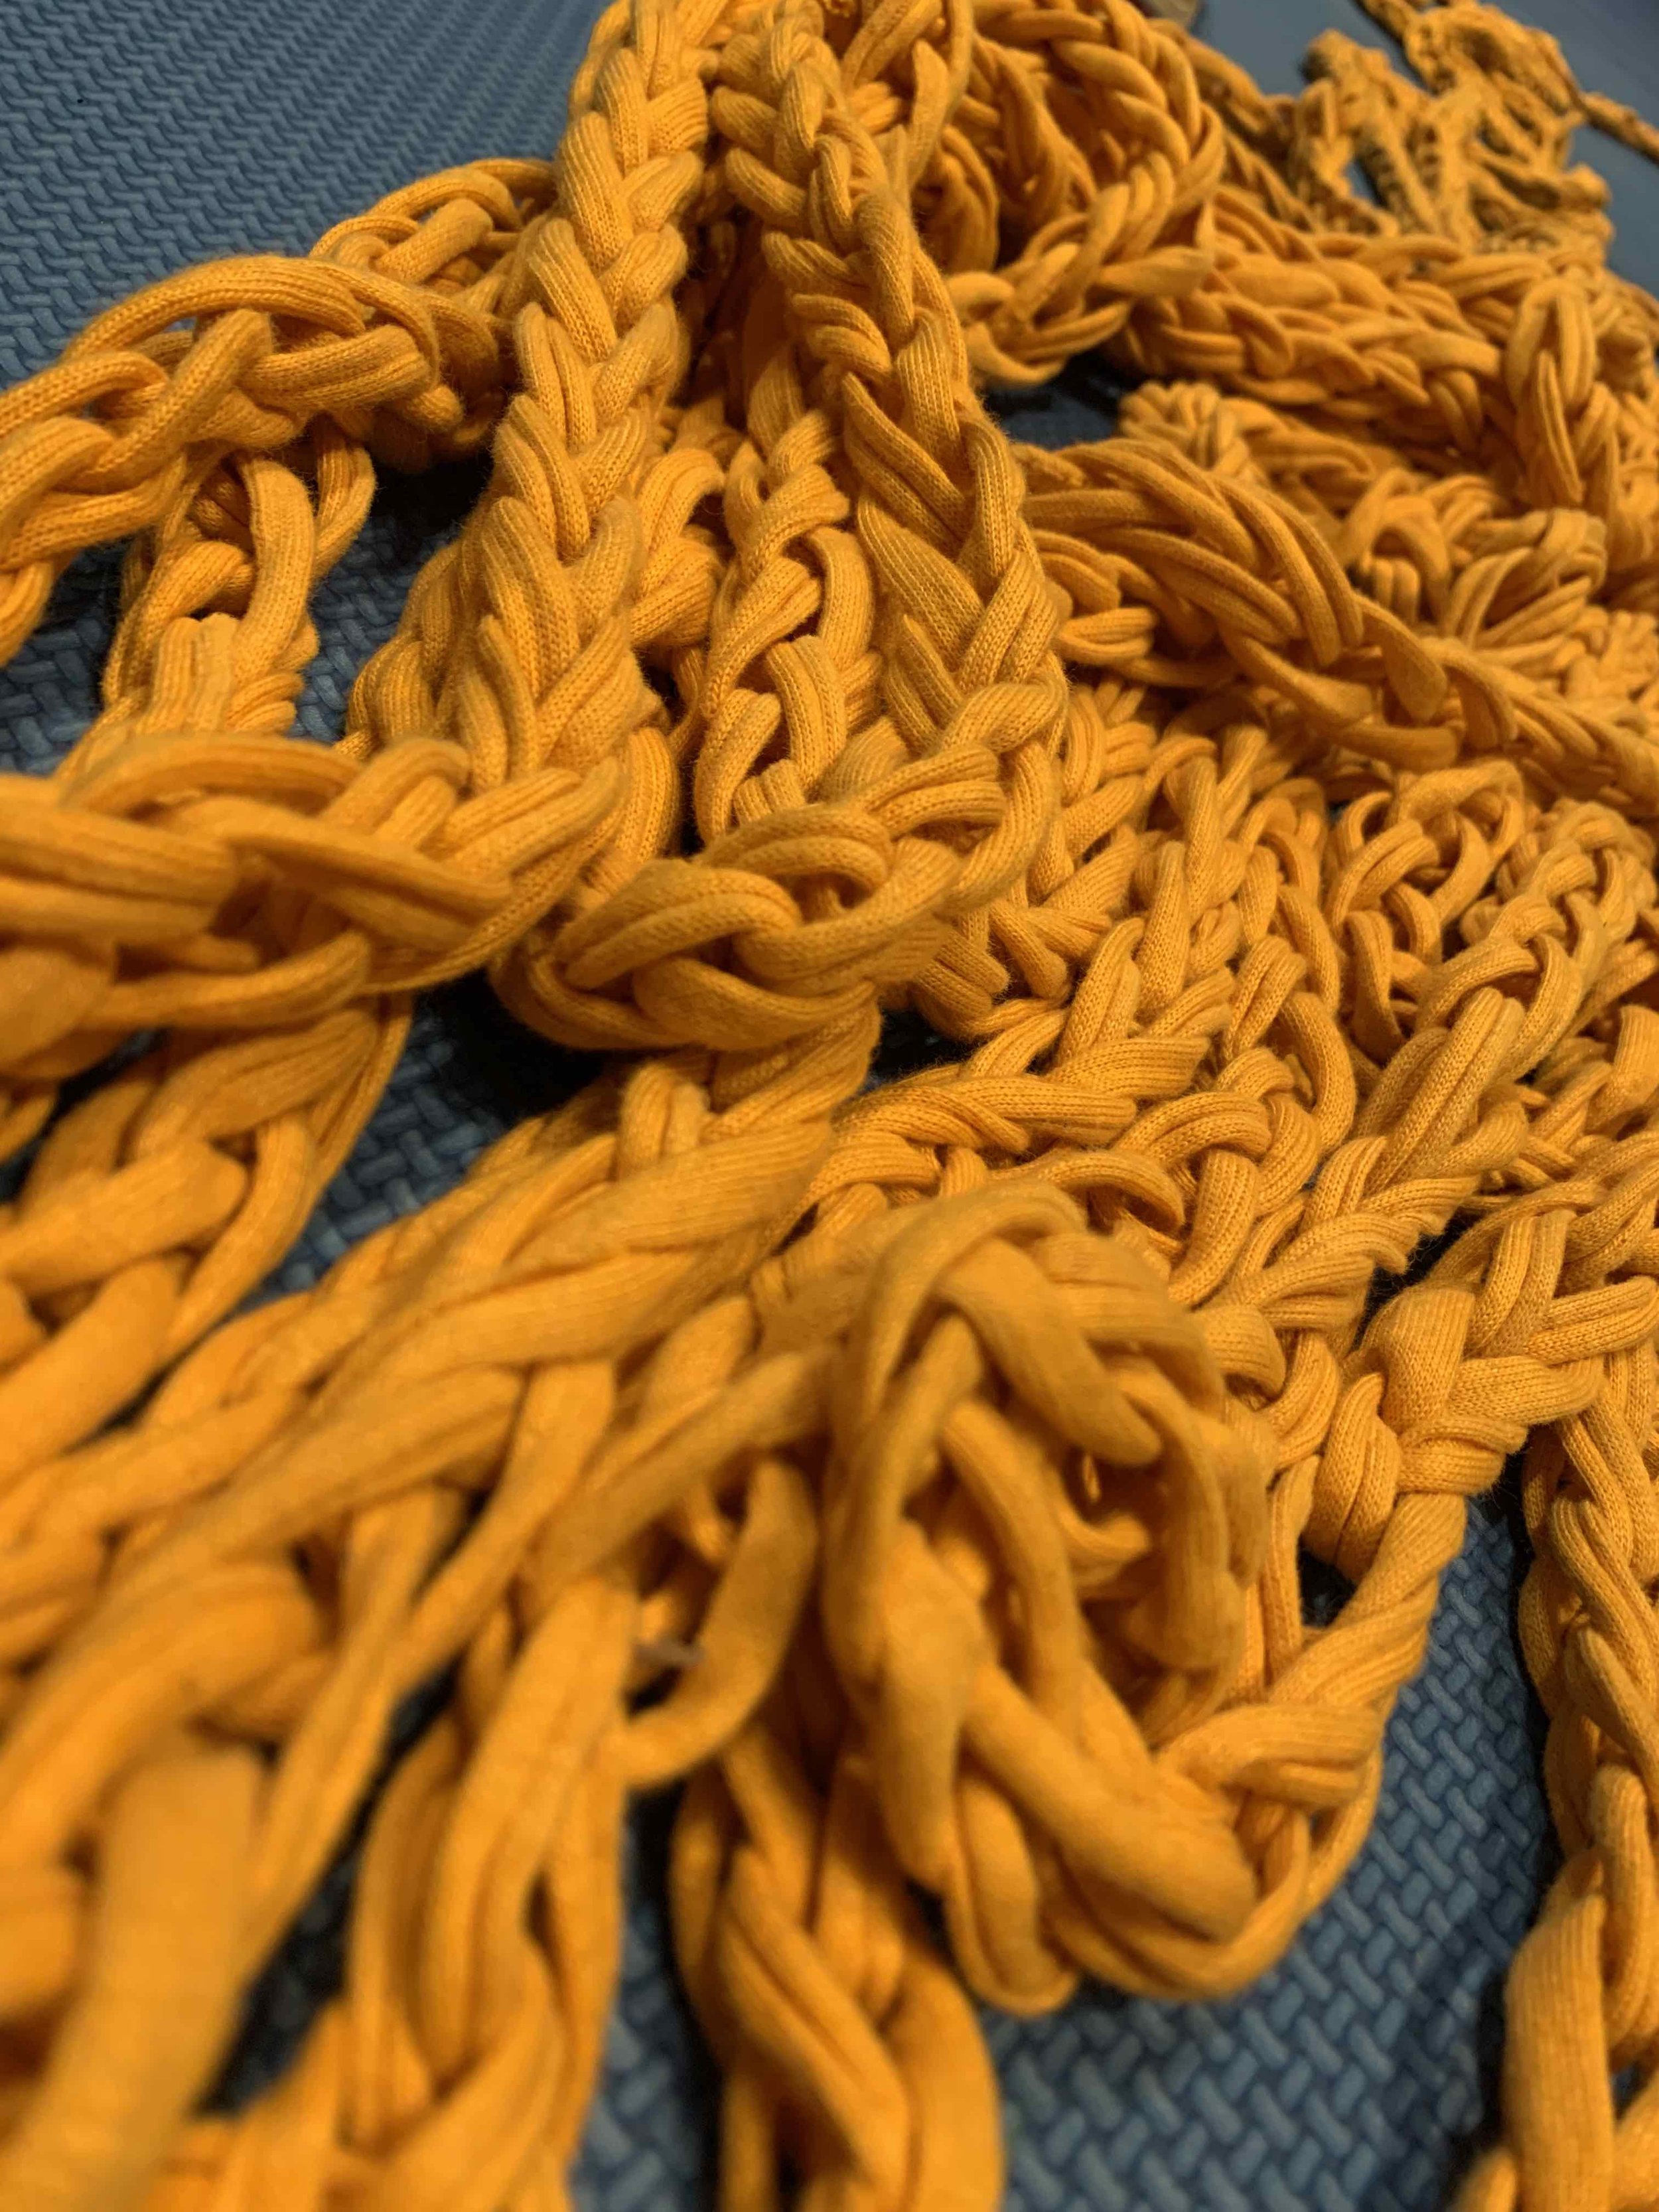 Yellow rope.jpg